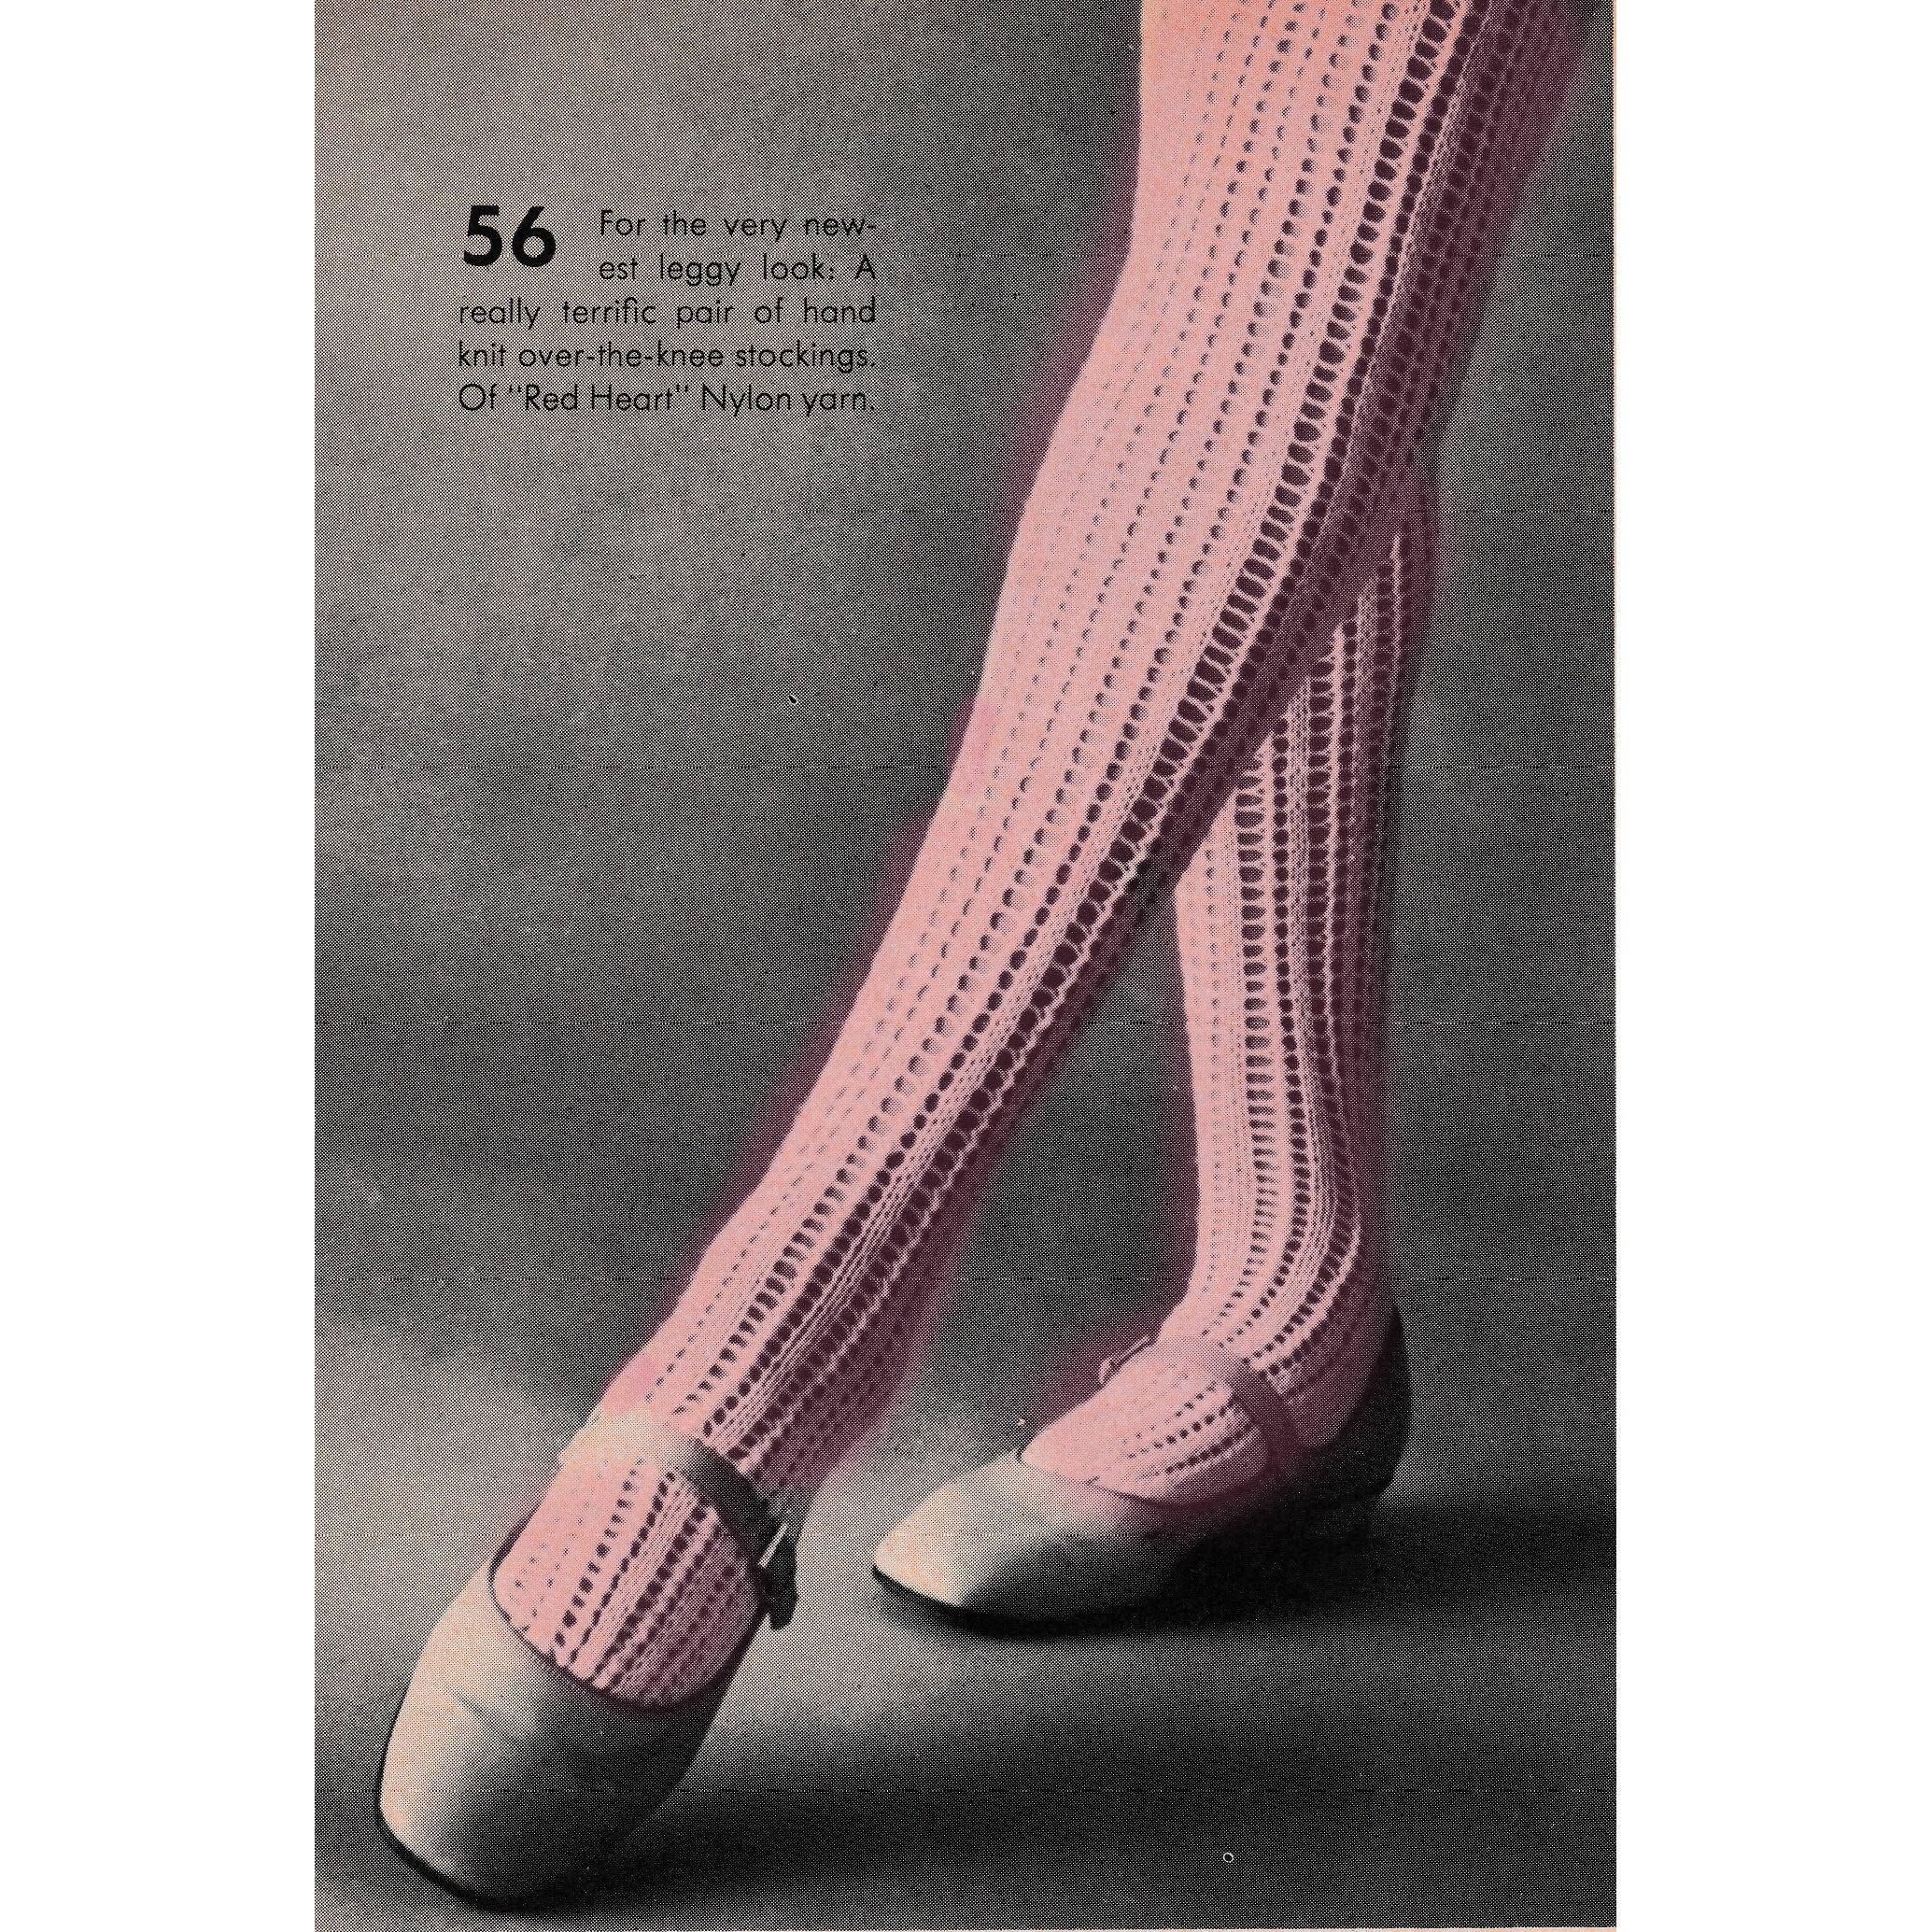 1920s vintage over the knee stockings, primitive knit socks in